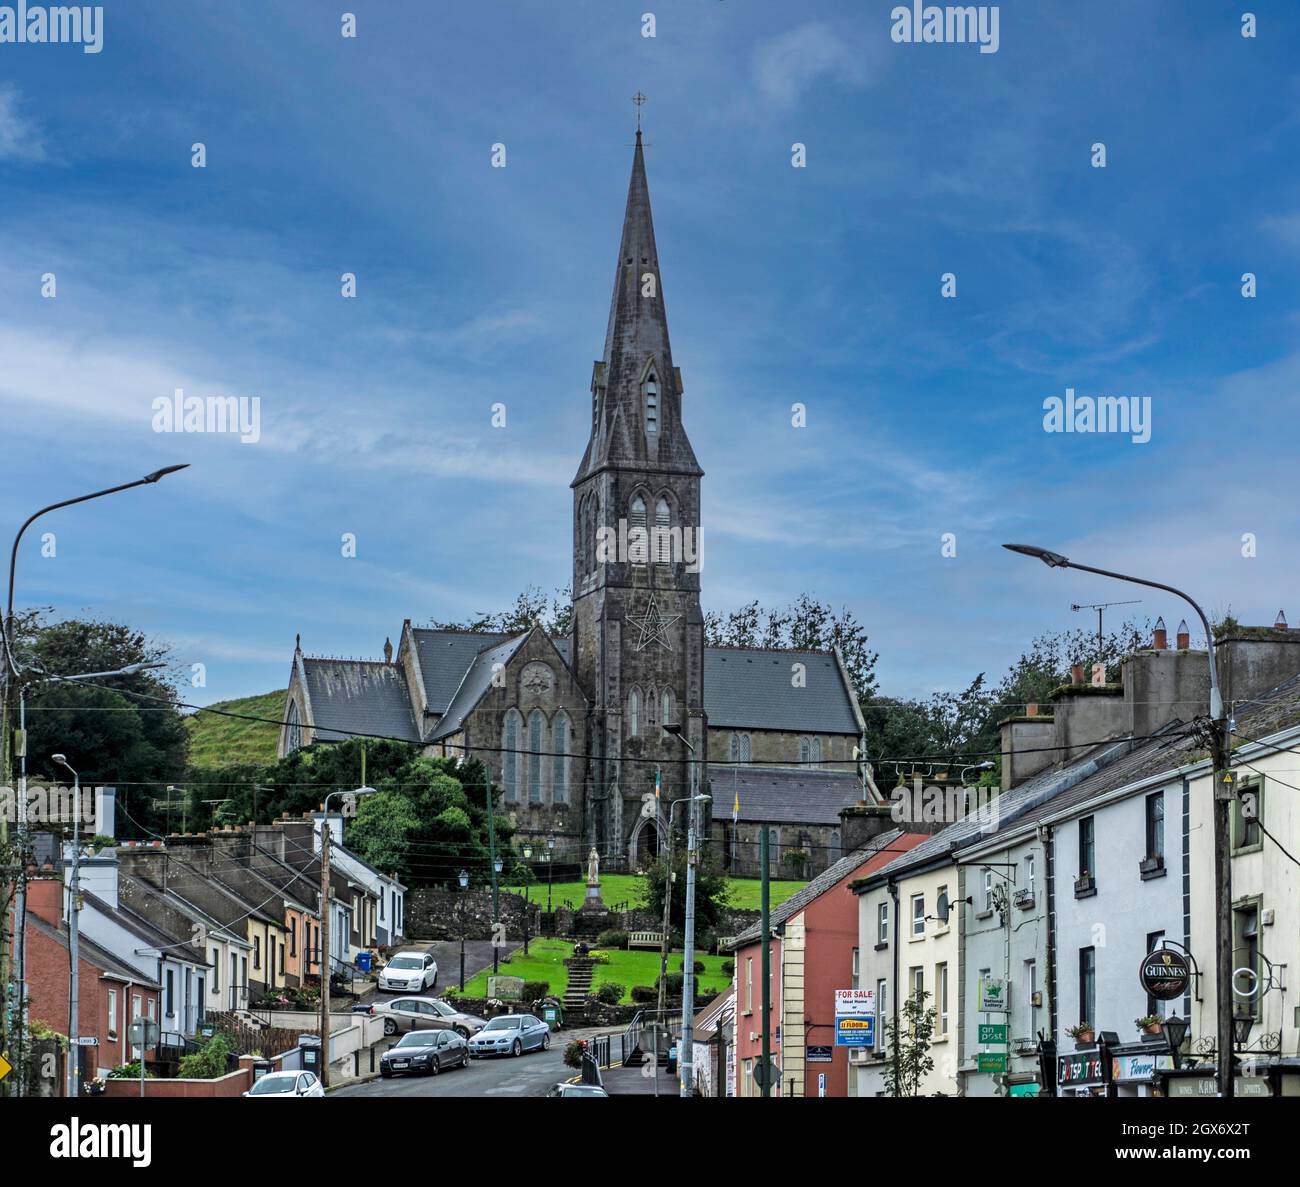 The main street in Granard, County Longford, Ireland dominated by St Marys Roman Catholic Church. Stock Photo